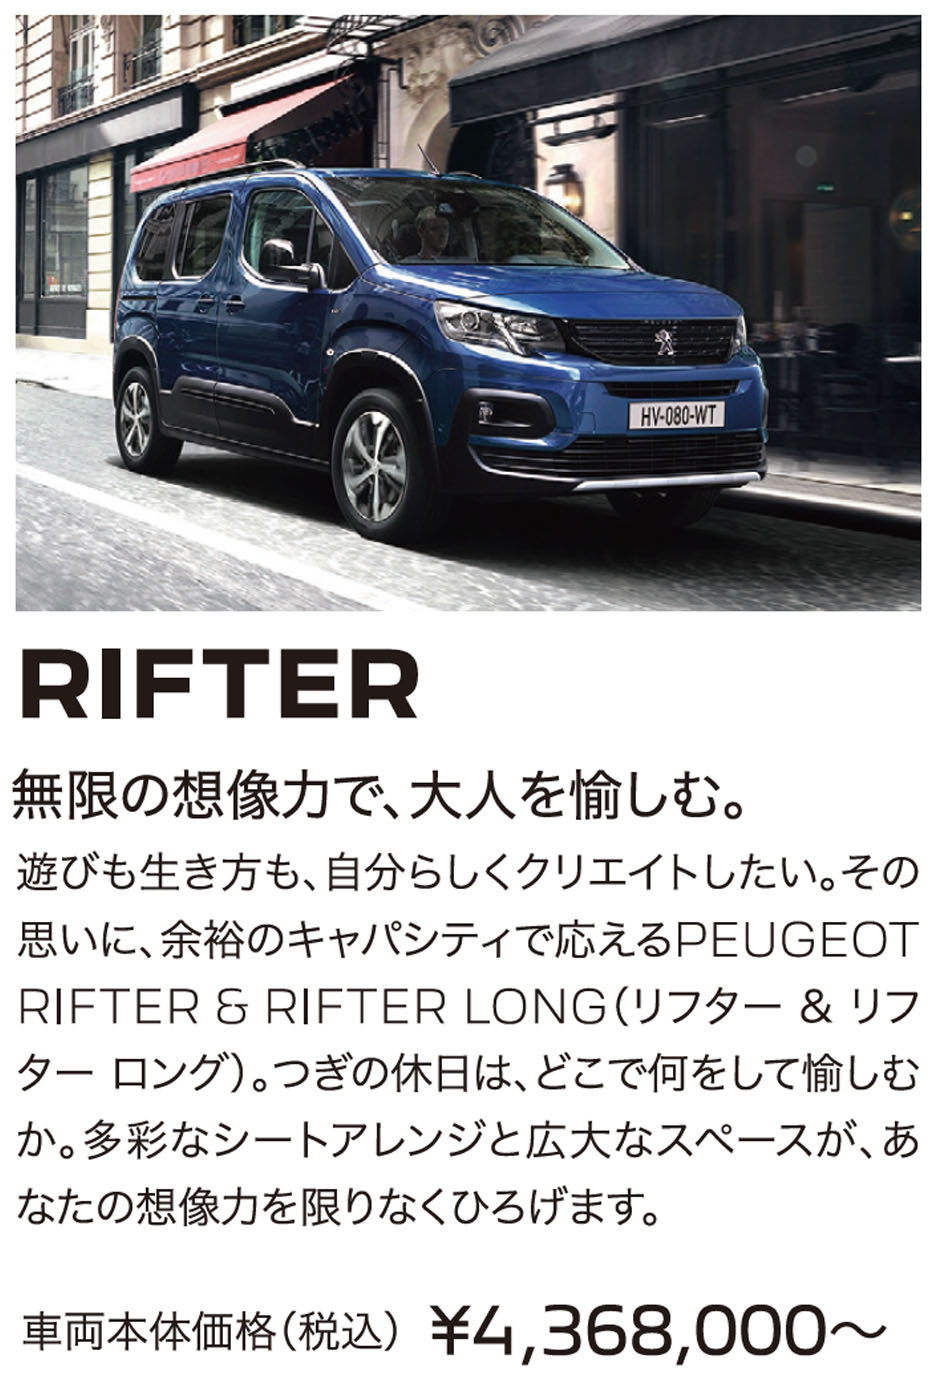 RIFTER 無限の想像力で、大人を愉しむ。 車両本体価格（税込）¥4,368,000〜